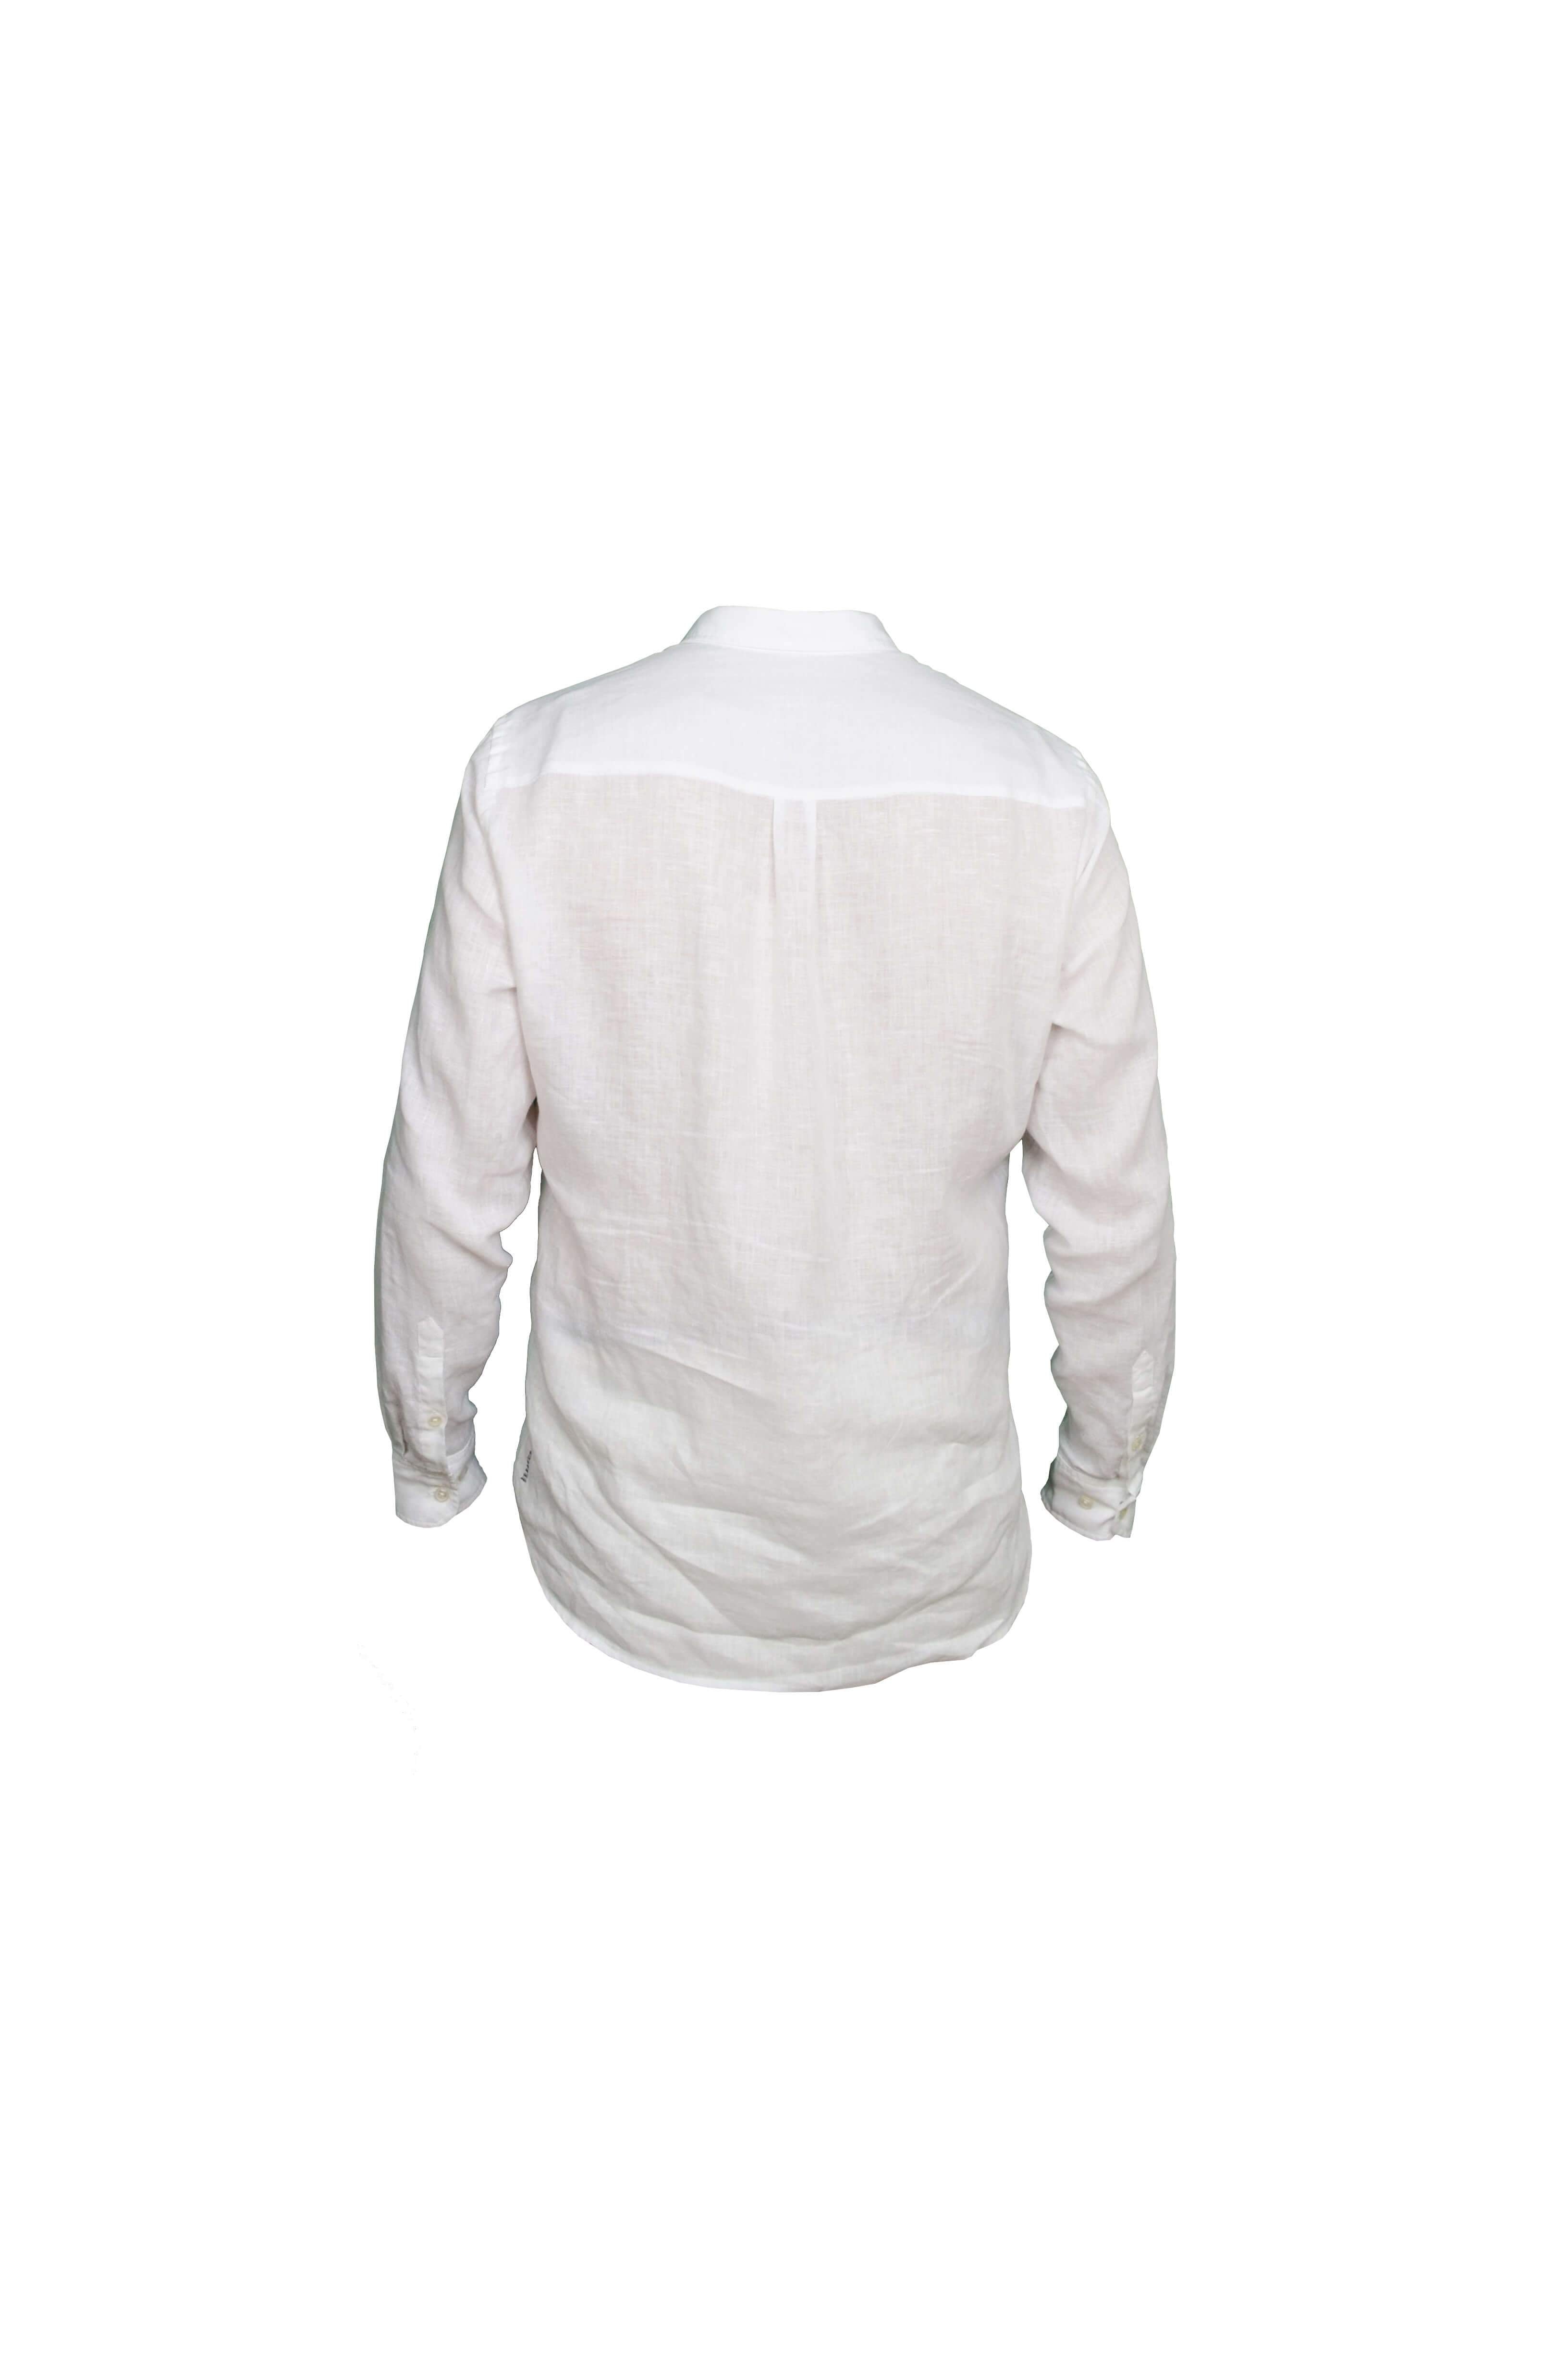 Faros White Linen Shirt - FAROS LINEN